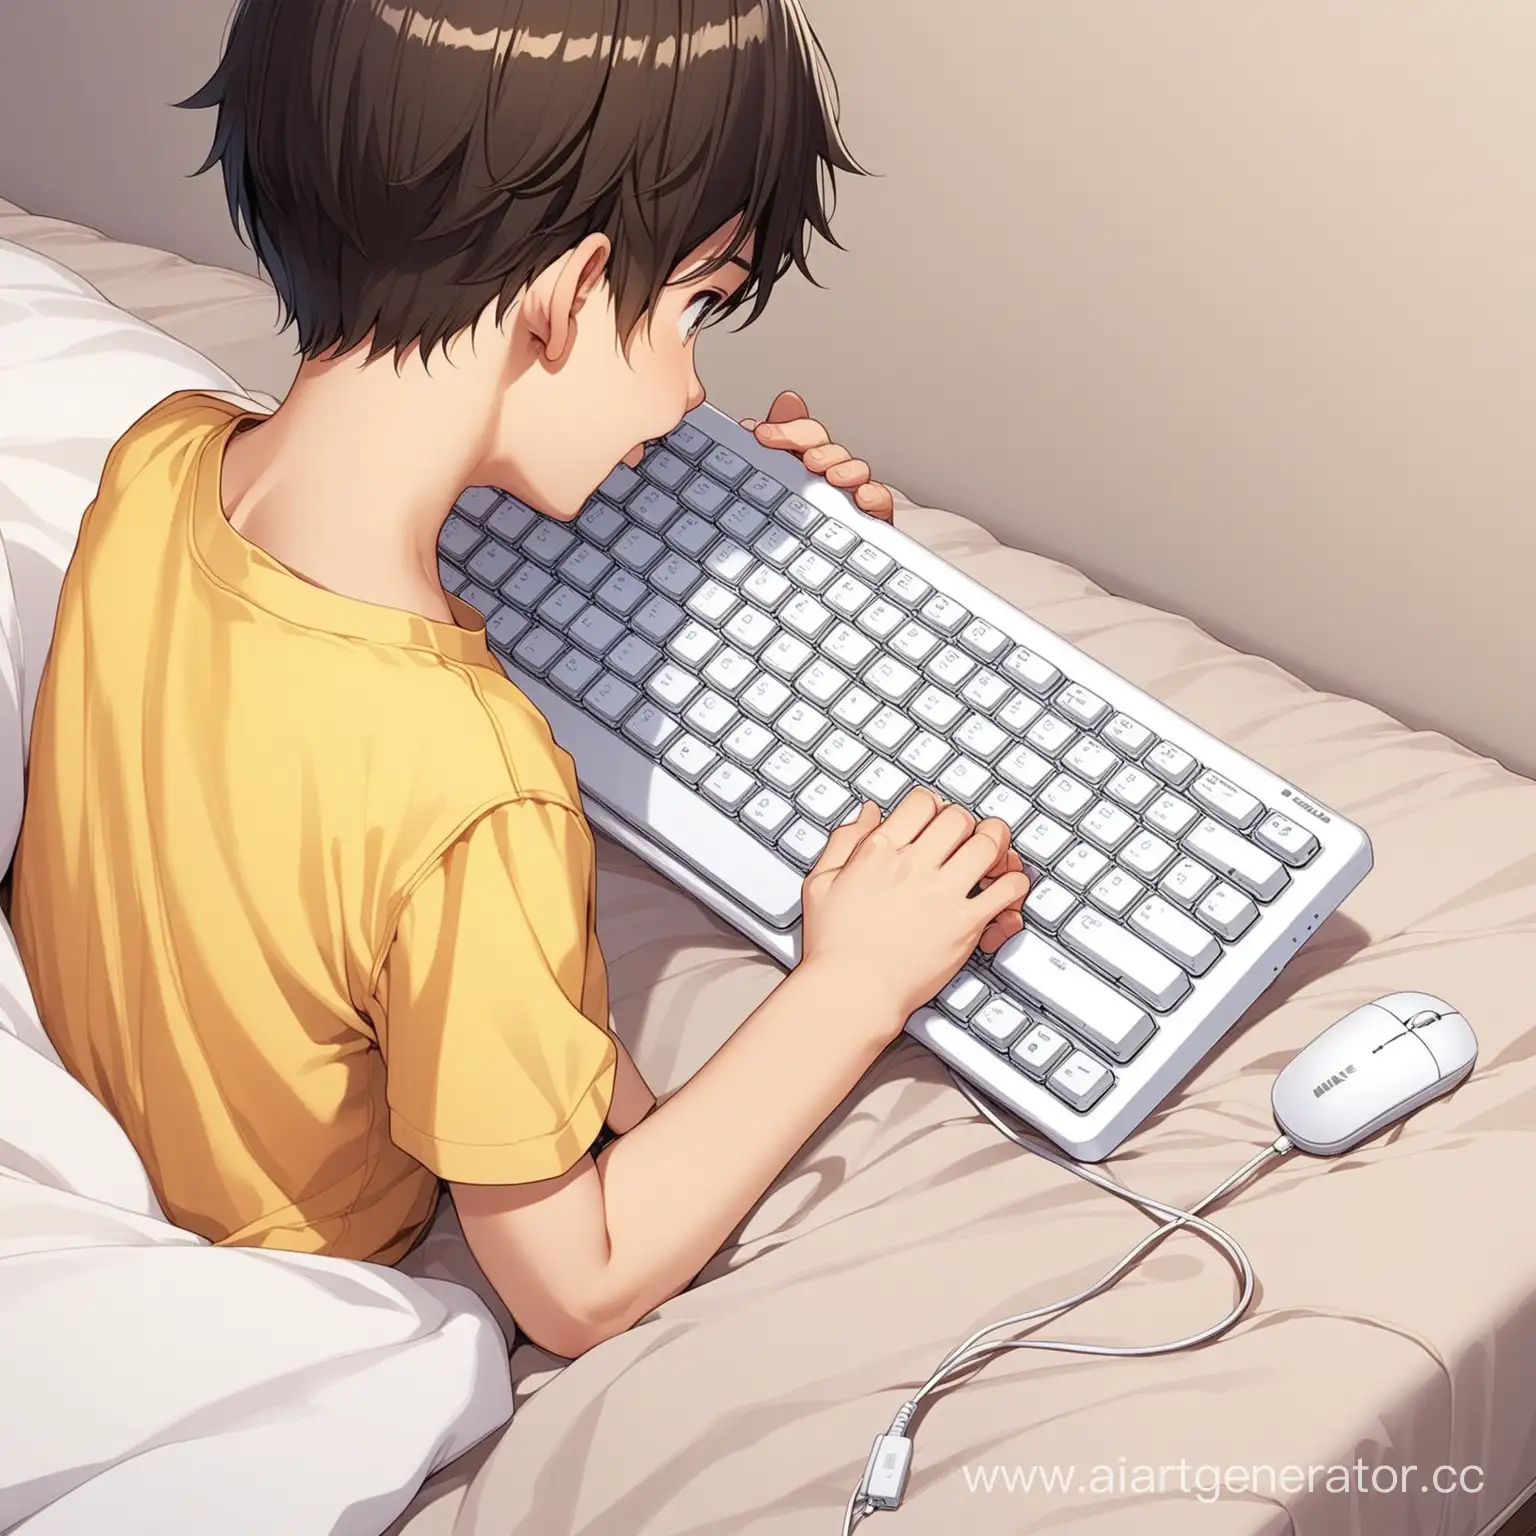 12 летний мальчик достал  белую безпроводную клавиатуру на кровати